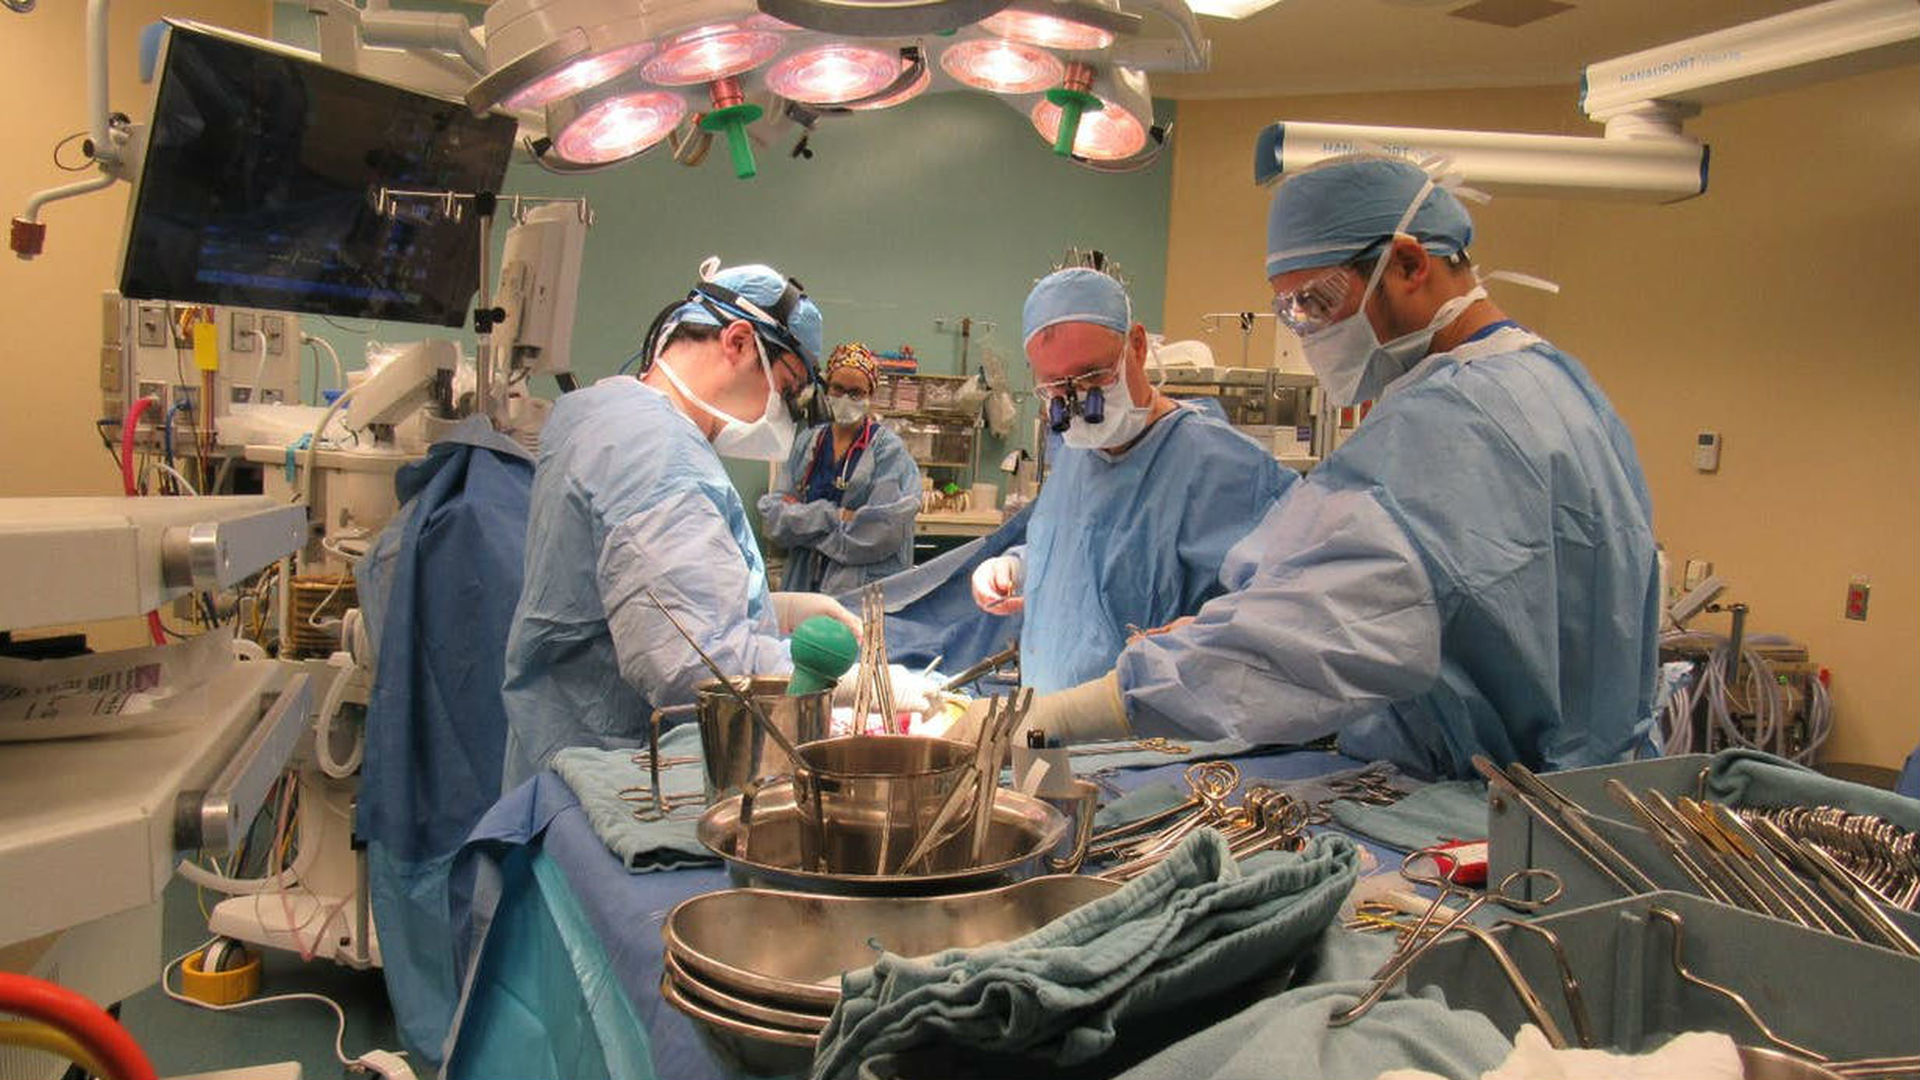 Пересадка от живого донора. Трансплантация органов и тканей. Трансплантология органов и ткани. Хирургическая операция.